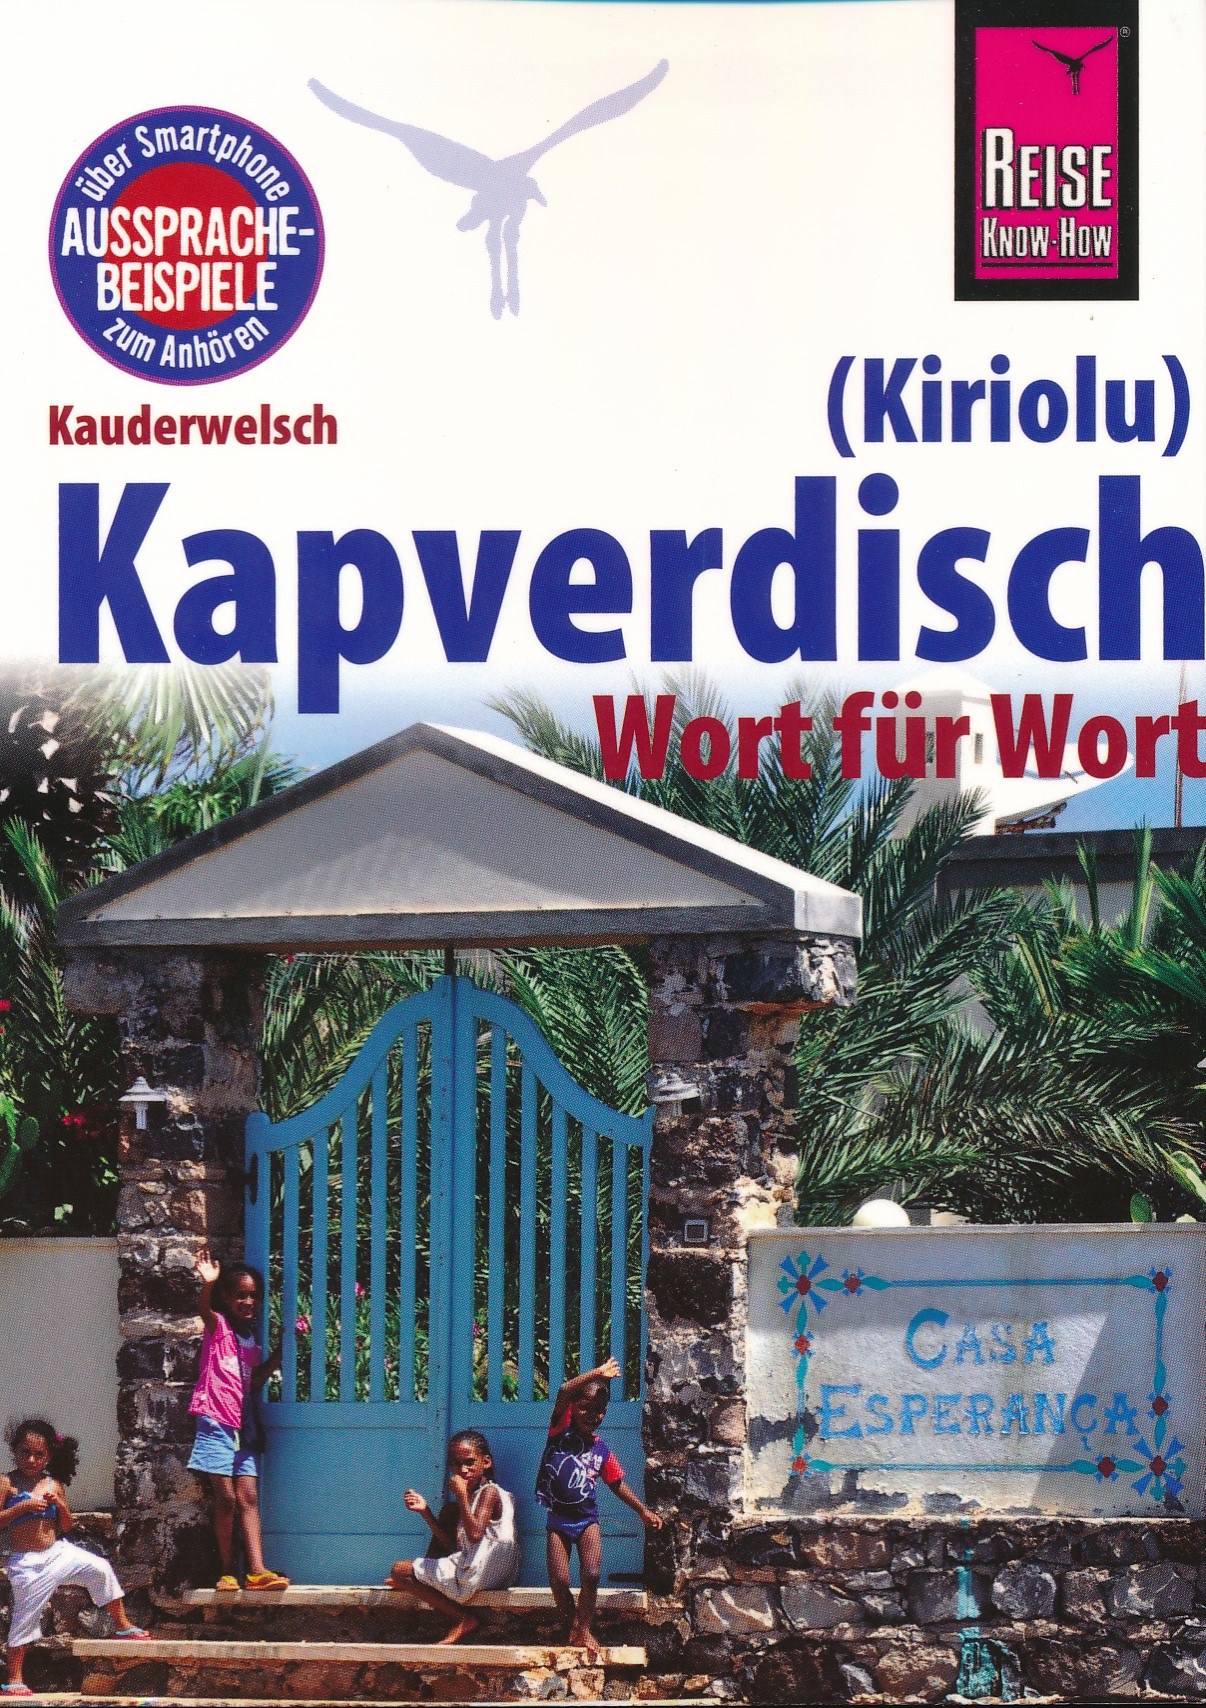 Online bestellen: Woordenboek Kauderwelsch Kapverdisch (Kiriolu) Wort für Wort | Reise Know-How Verlag